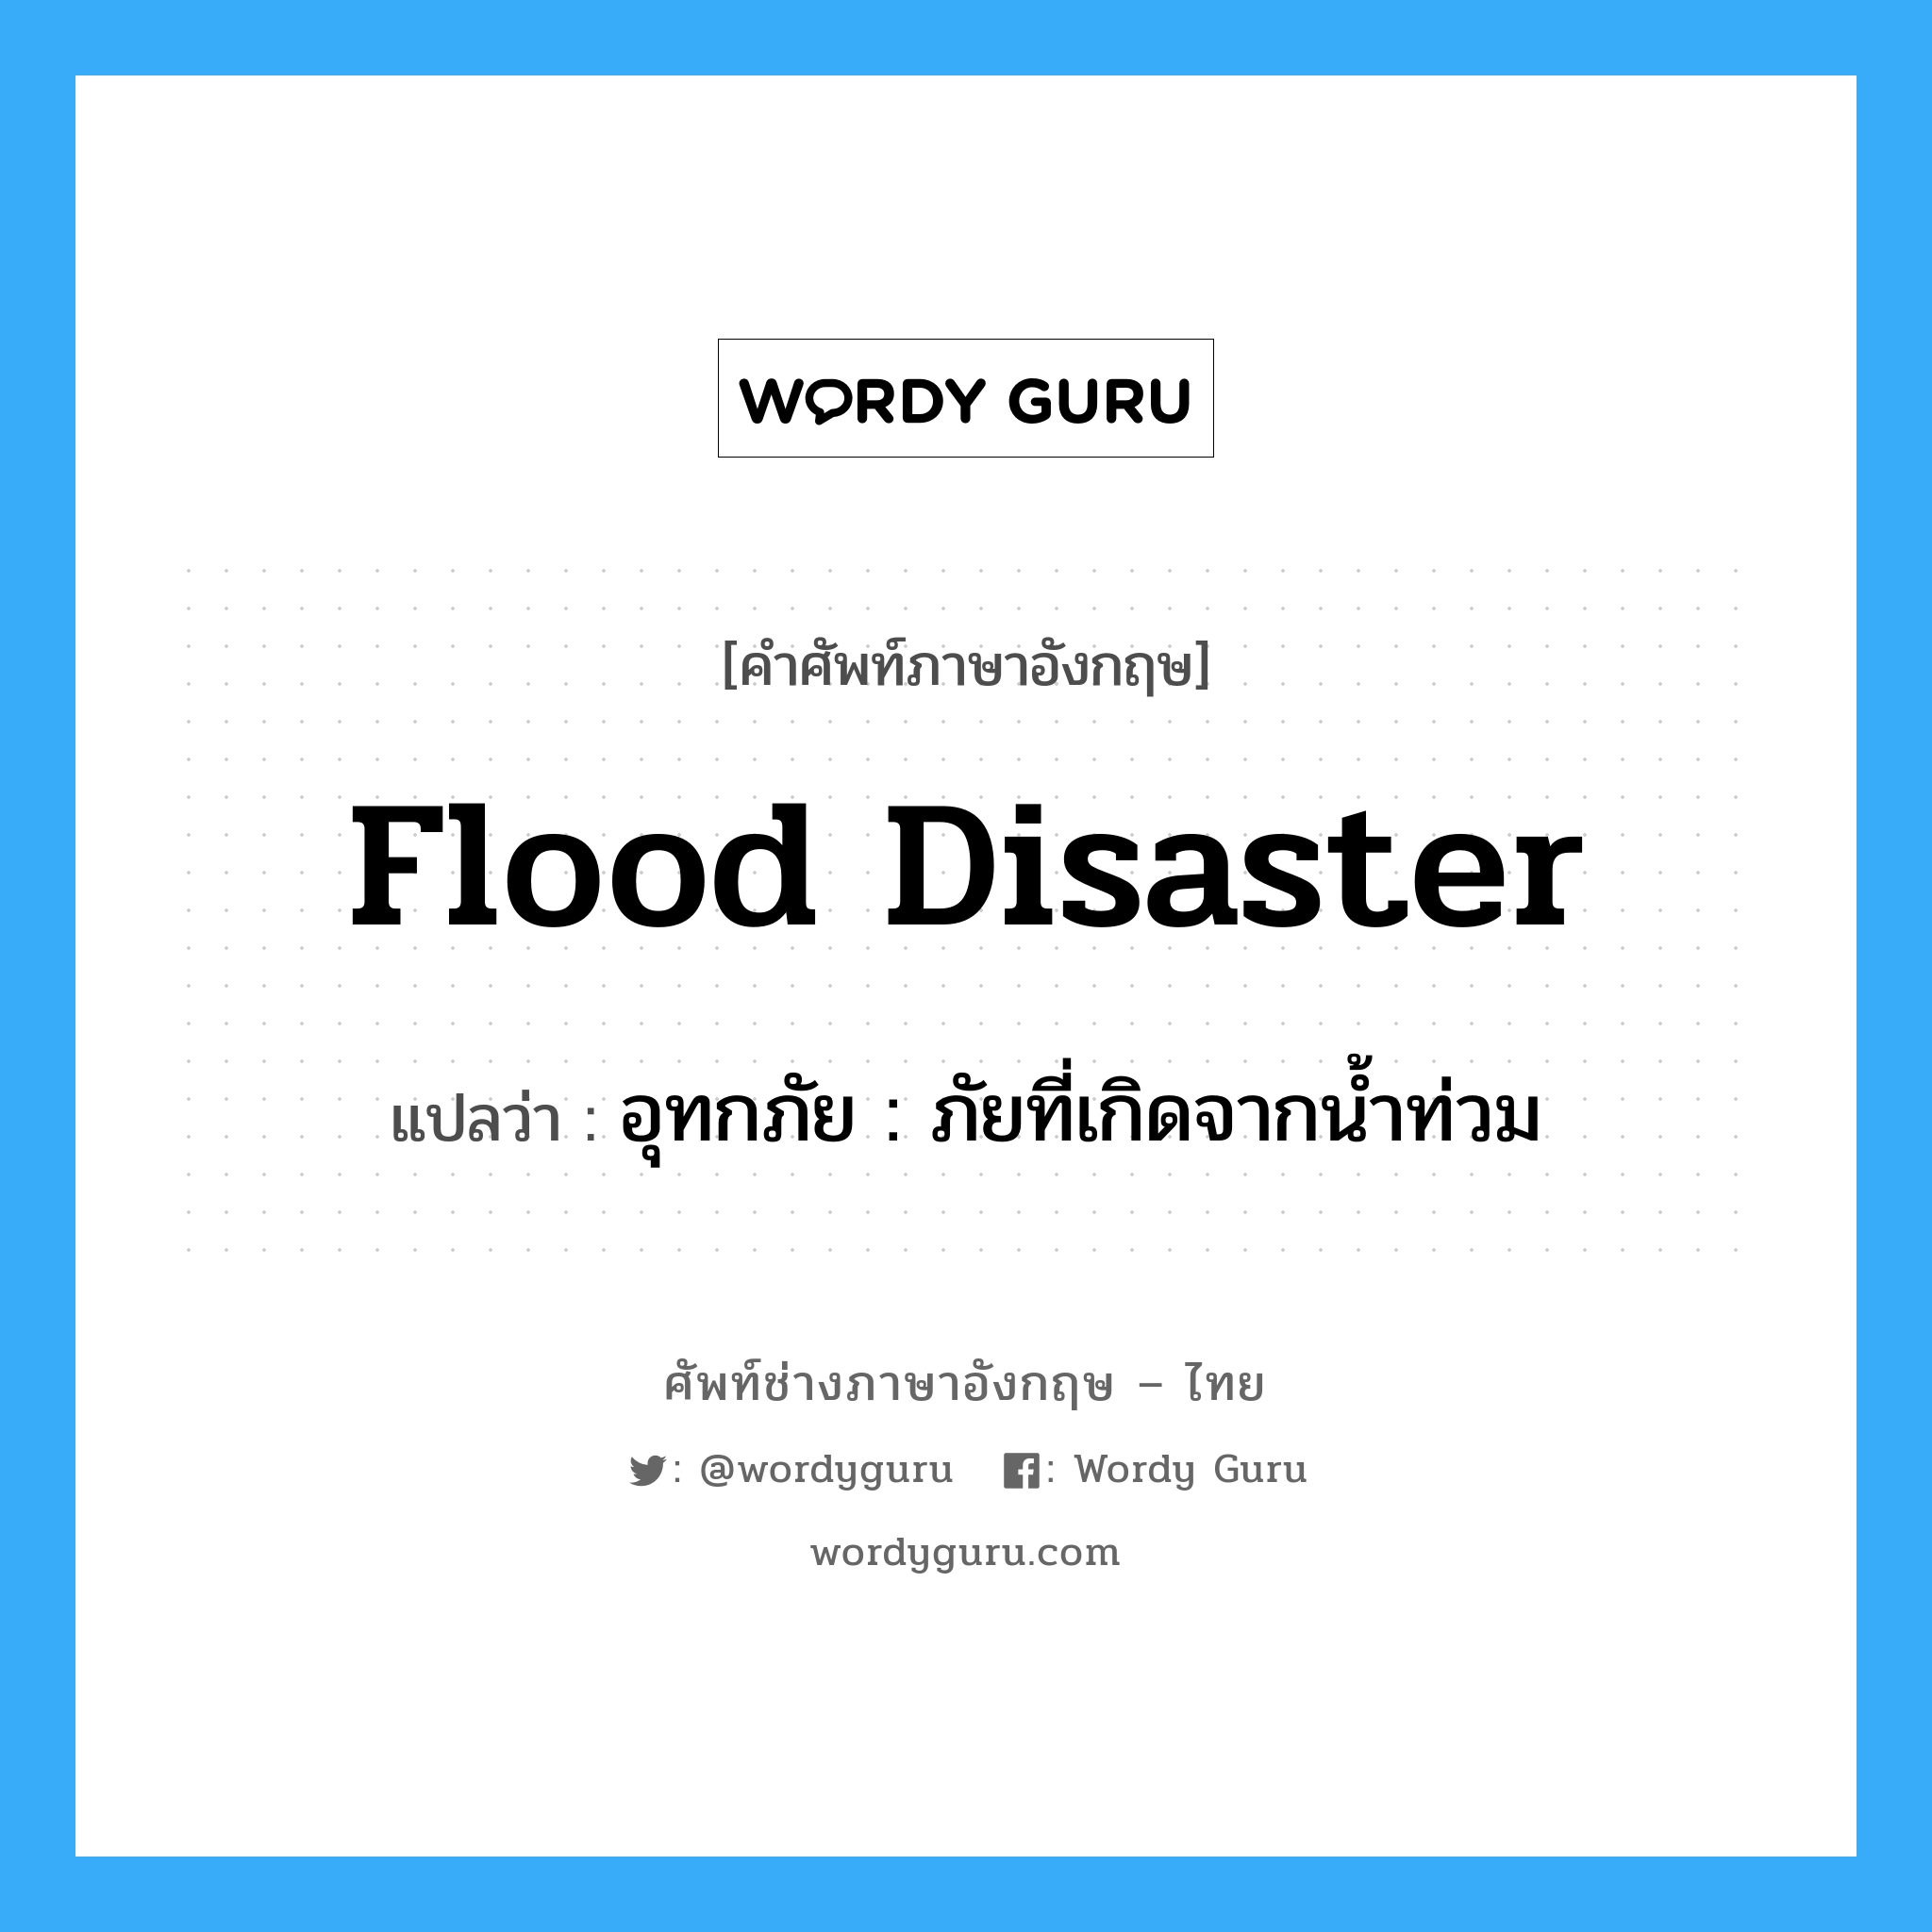 อุทกภัย : ภัยที่เกิดจากน้ำท่วม ภาษาอังกฤษ?, คำศัพท์ช่างภาษาอังกฤษ - ไทย อุทกภัย : ภัยที่เกิดจากน้ำท่วม คำศัพท์ภาษาอังกฤษ อุทกภัย : ภัยที่เกิดจากน้ำท่วม แปลว่า flood disaster